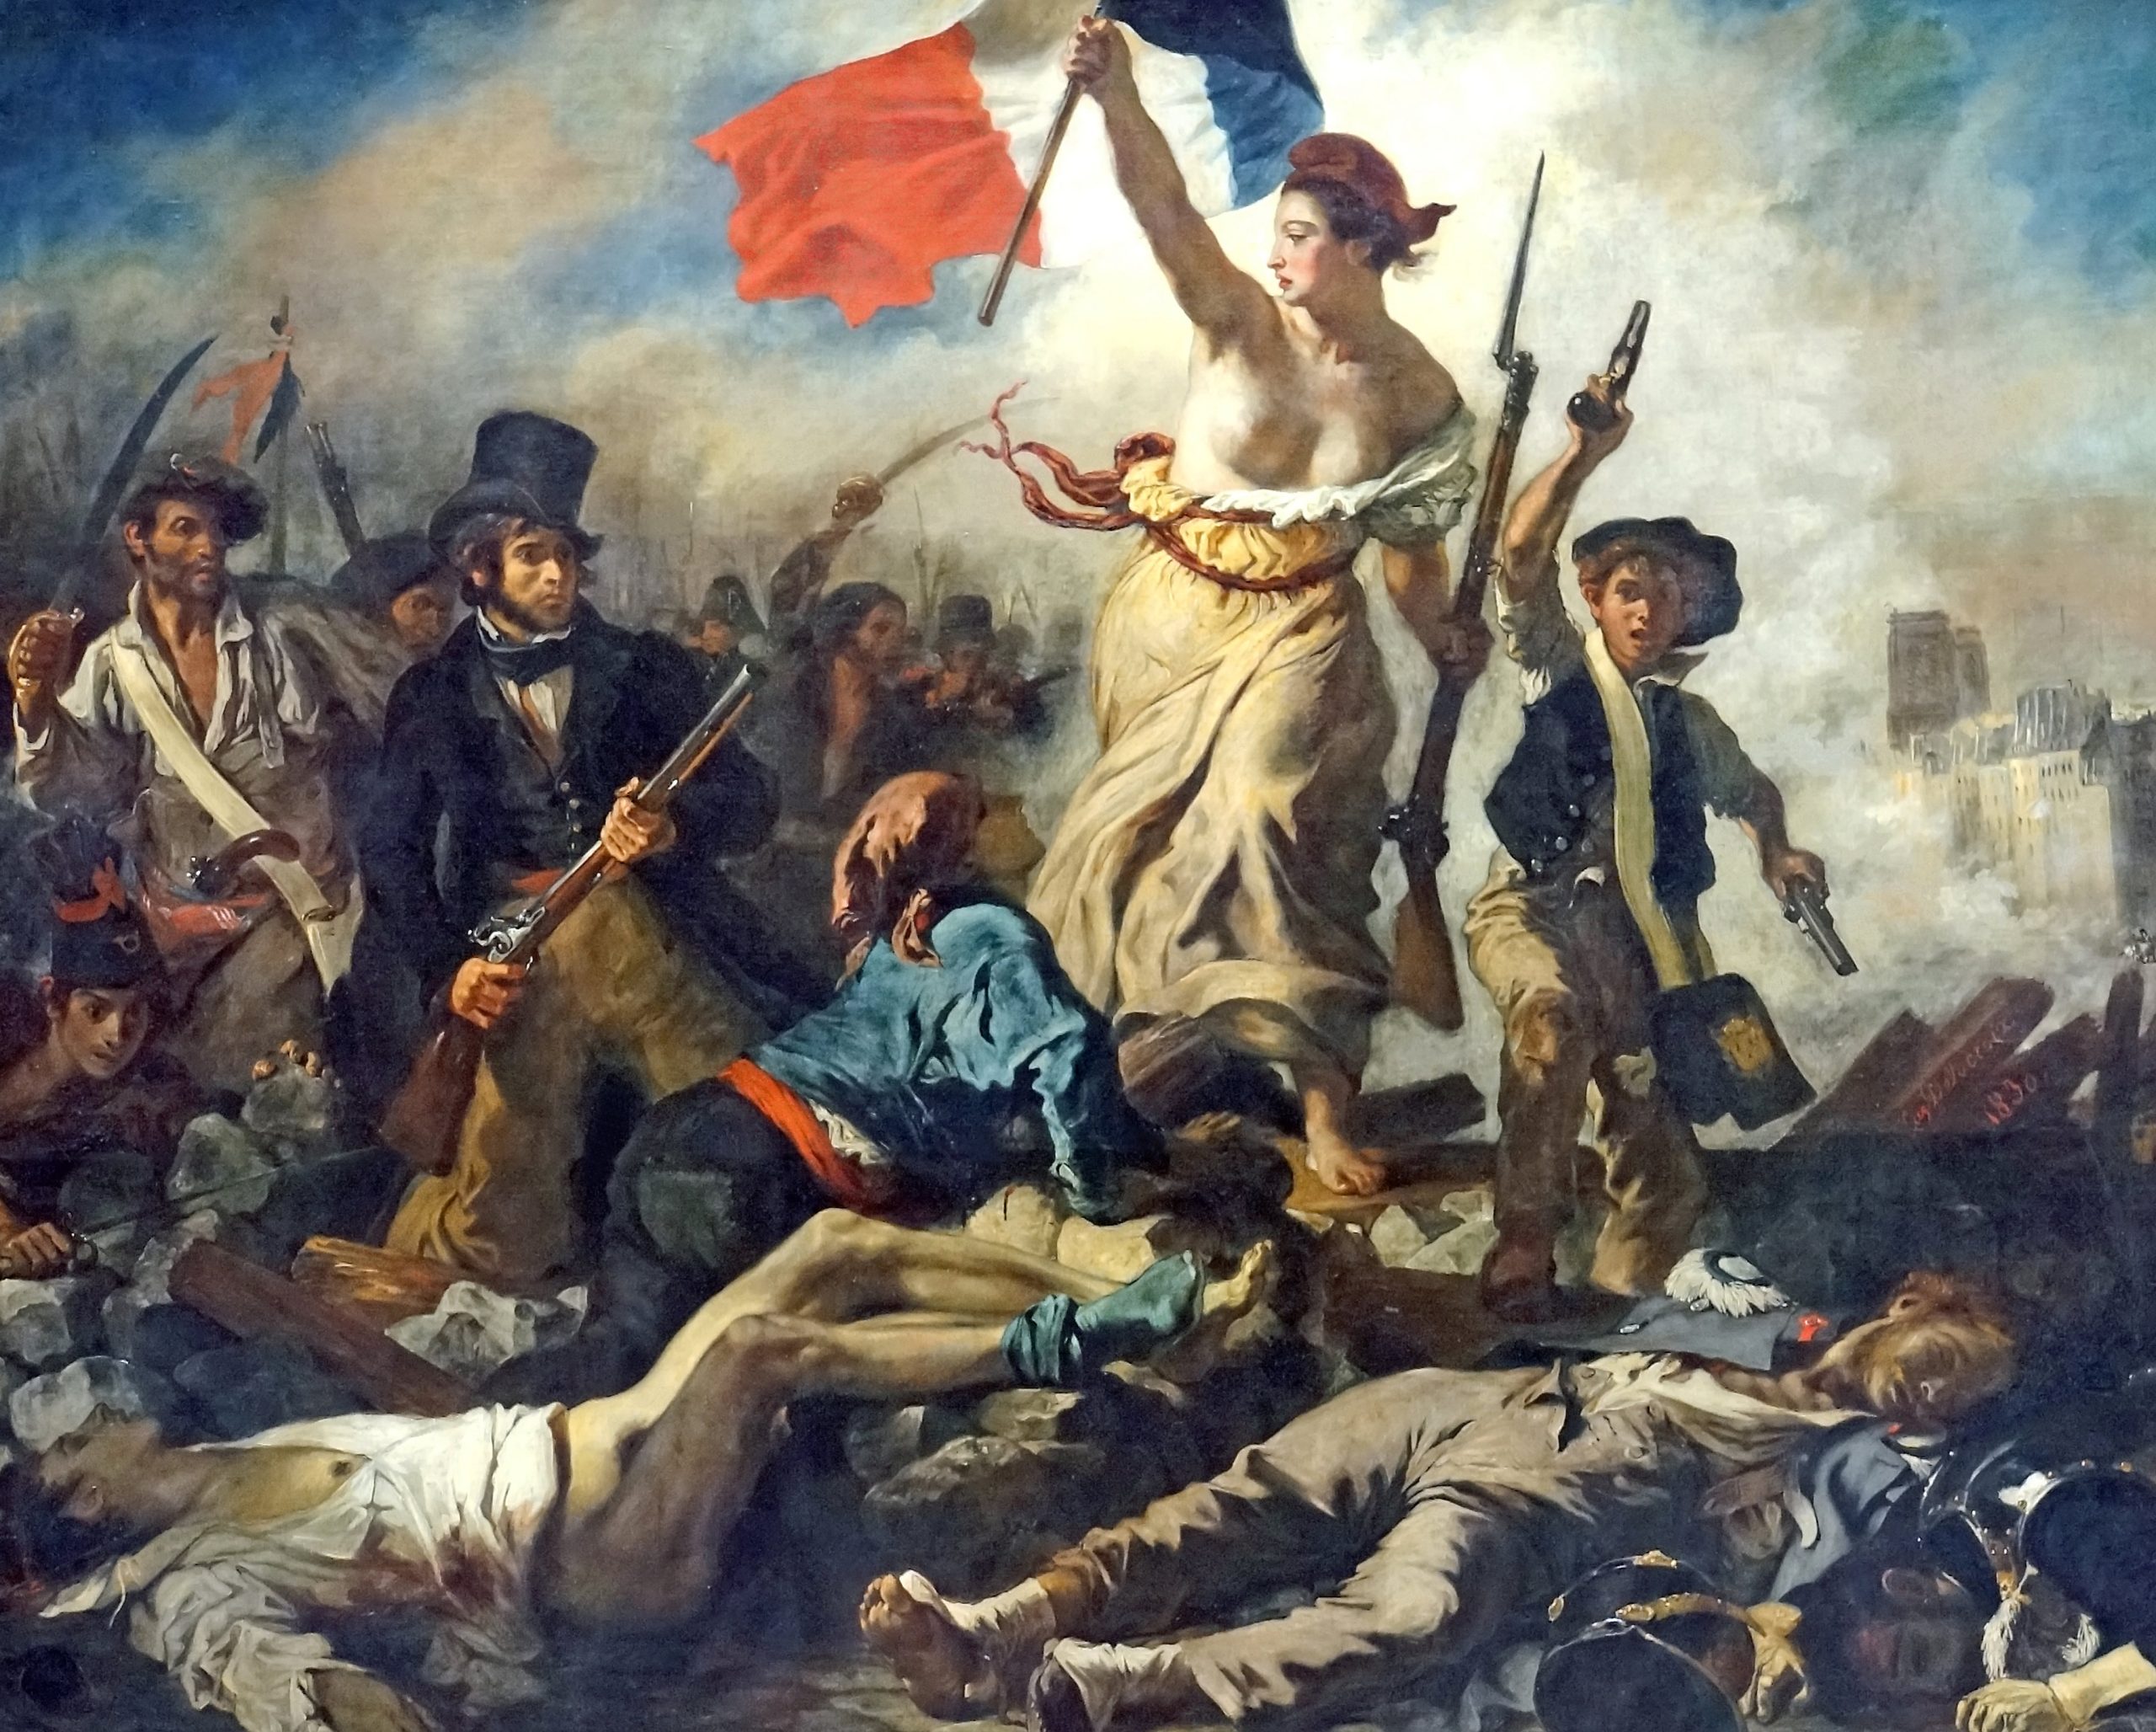 Eugène Delacroix, Liberty Leading the People, oil on canvas, 1830 (Musée du Louvre, Paris). Photo: Dennis Jarvis, CC BY-SA 2.0.